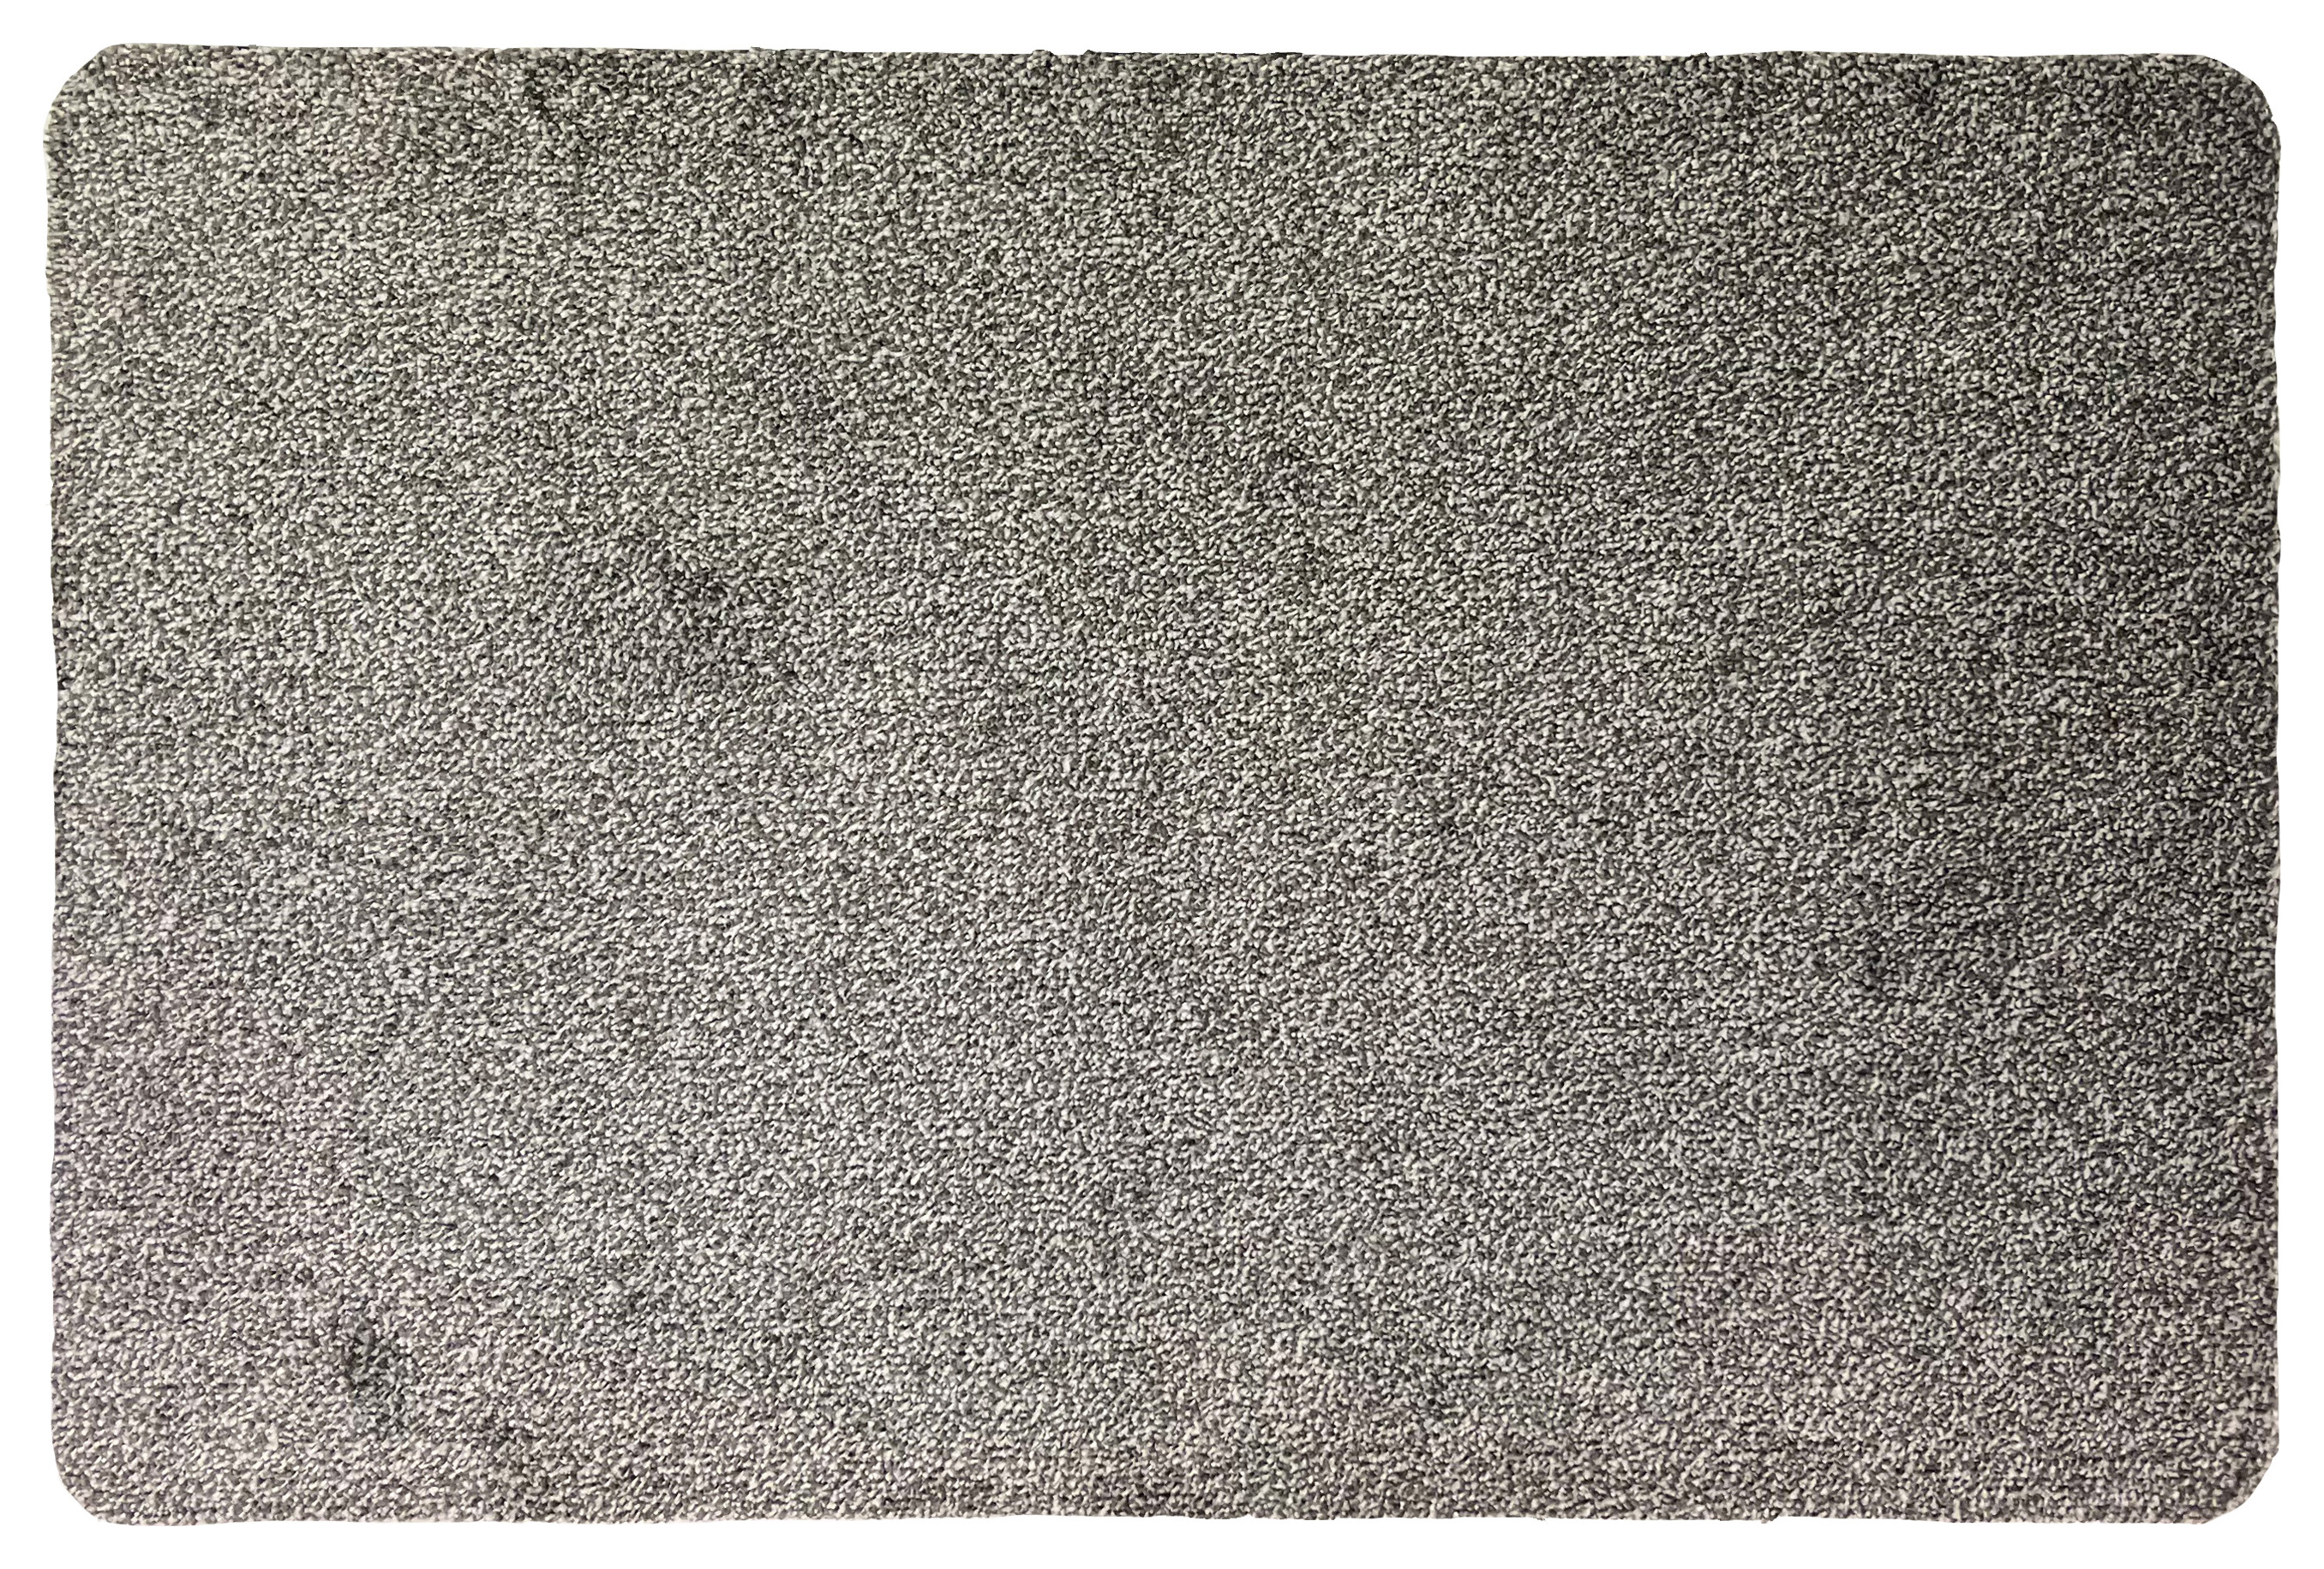 Image of Washable Doormat - 50 x 80cm